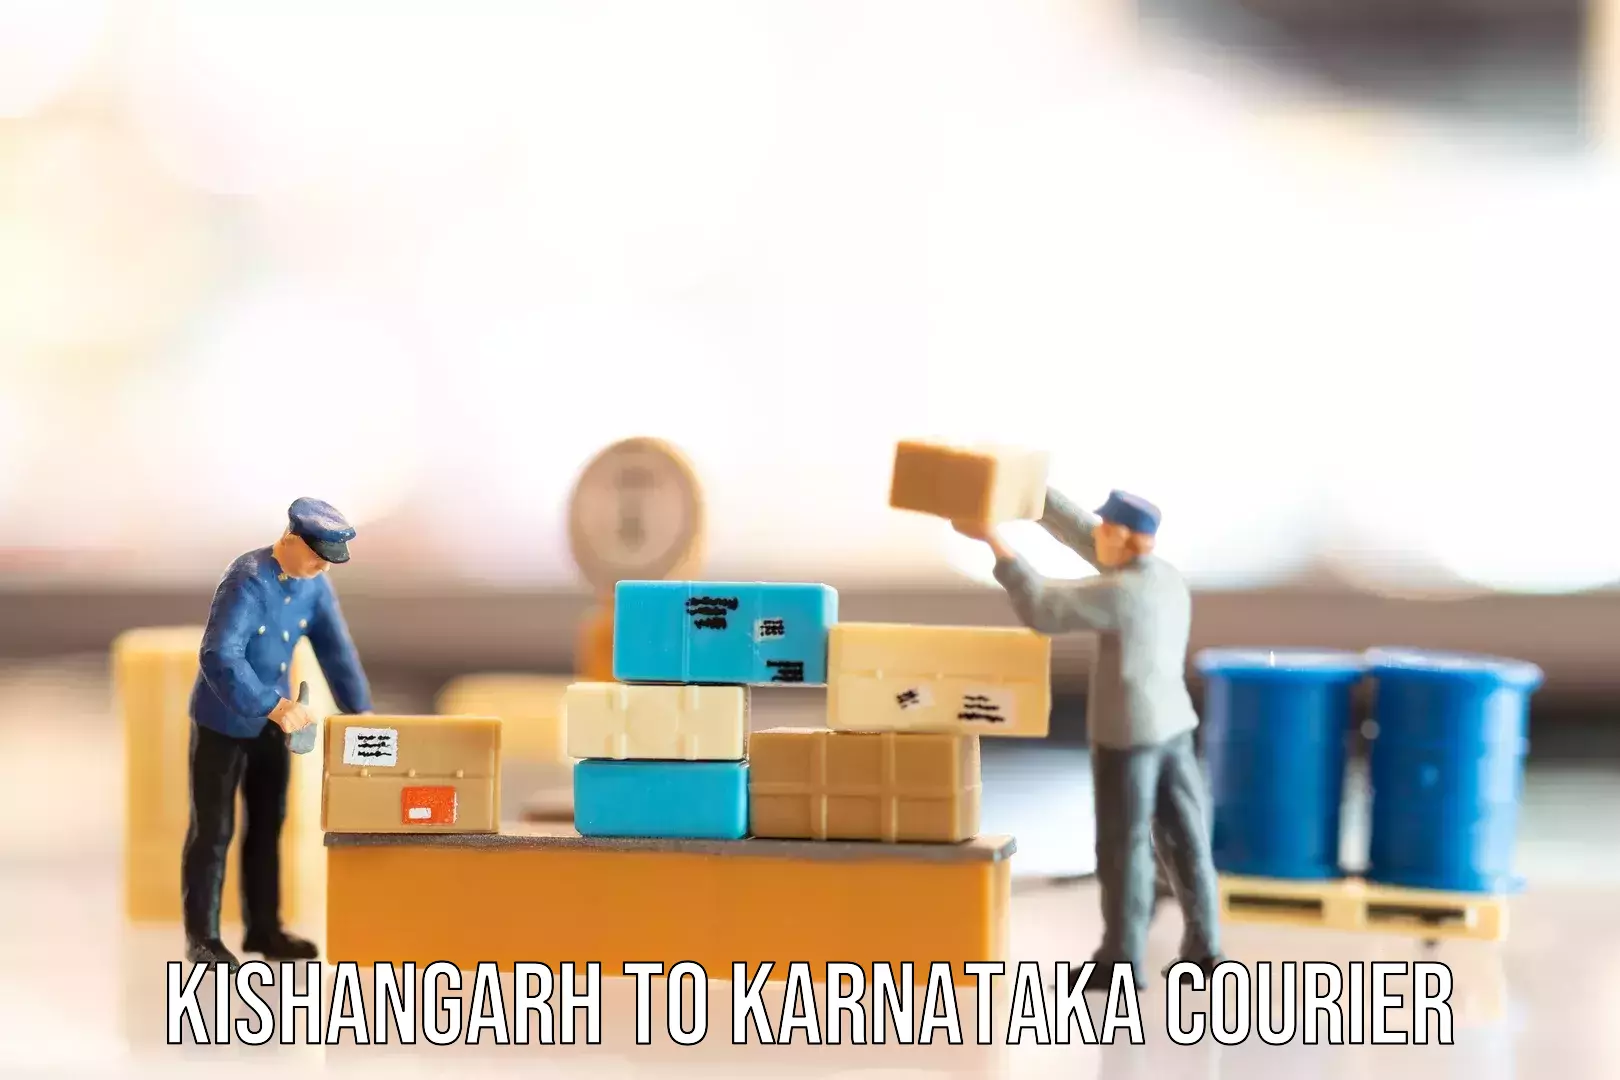 Baggage courier optimization Kishangarh to Karnataka